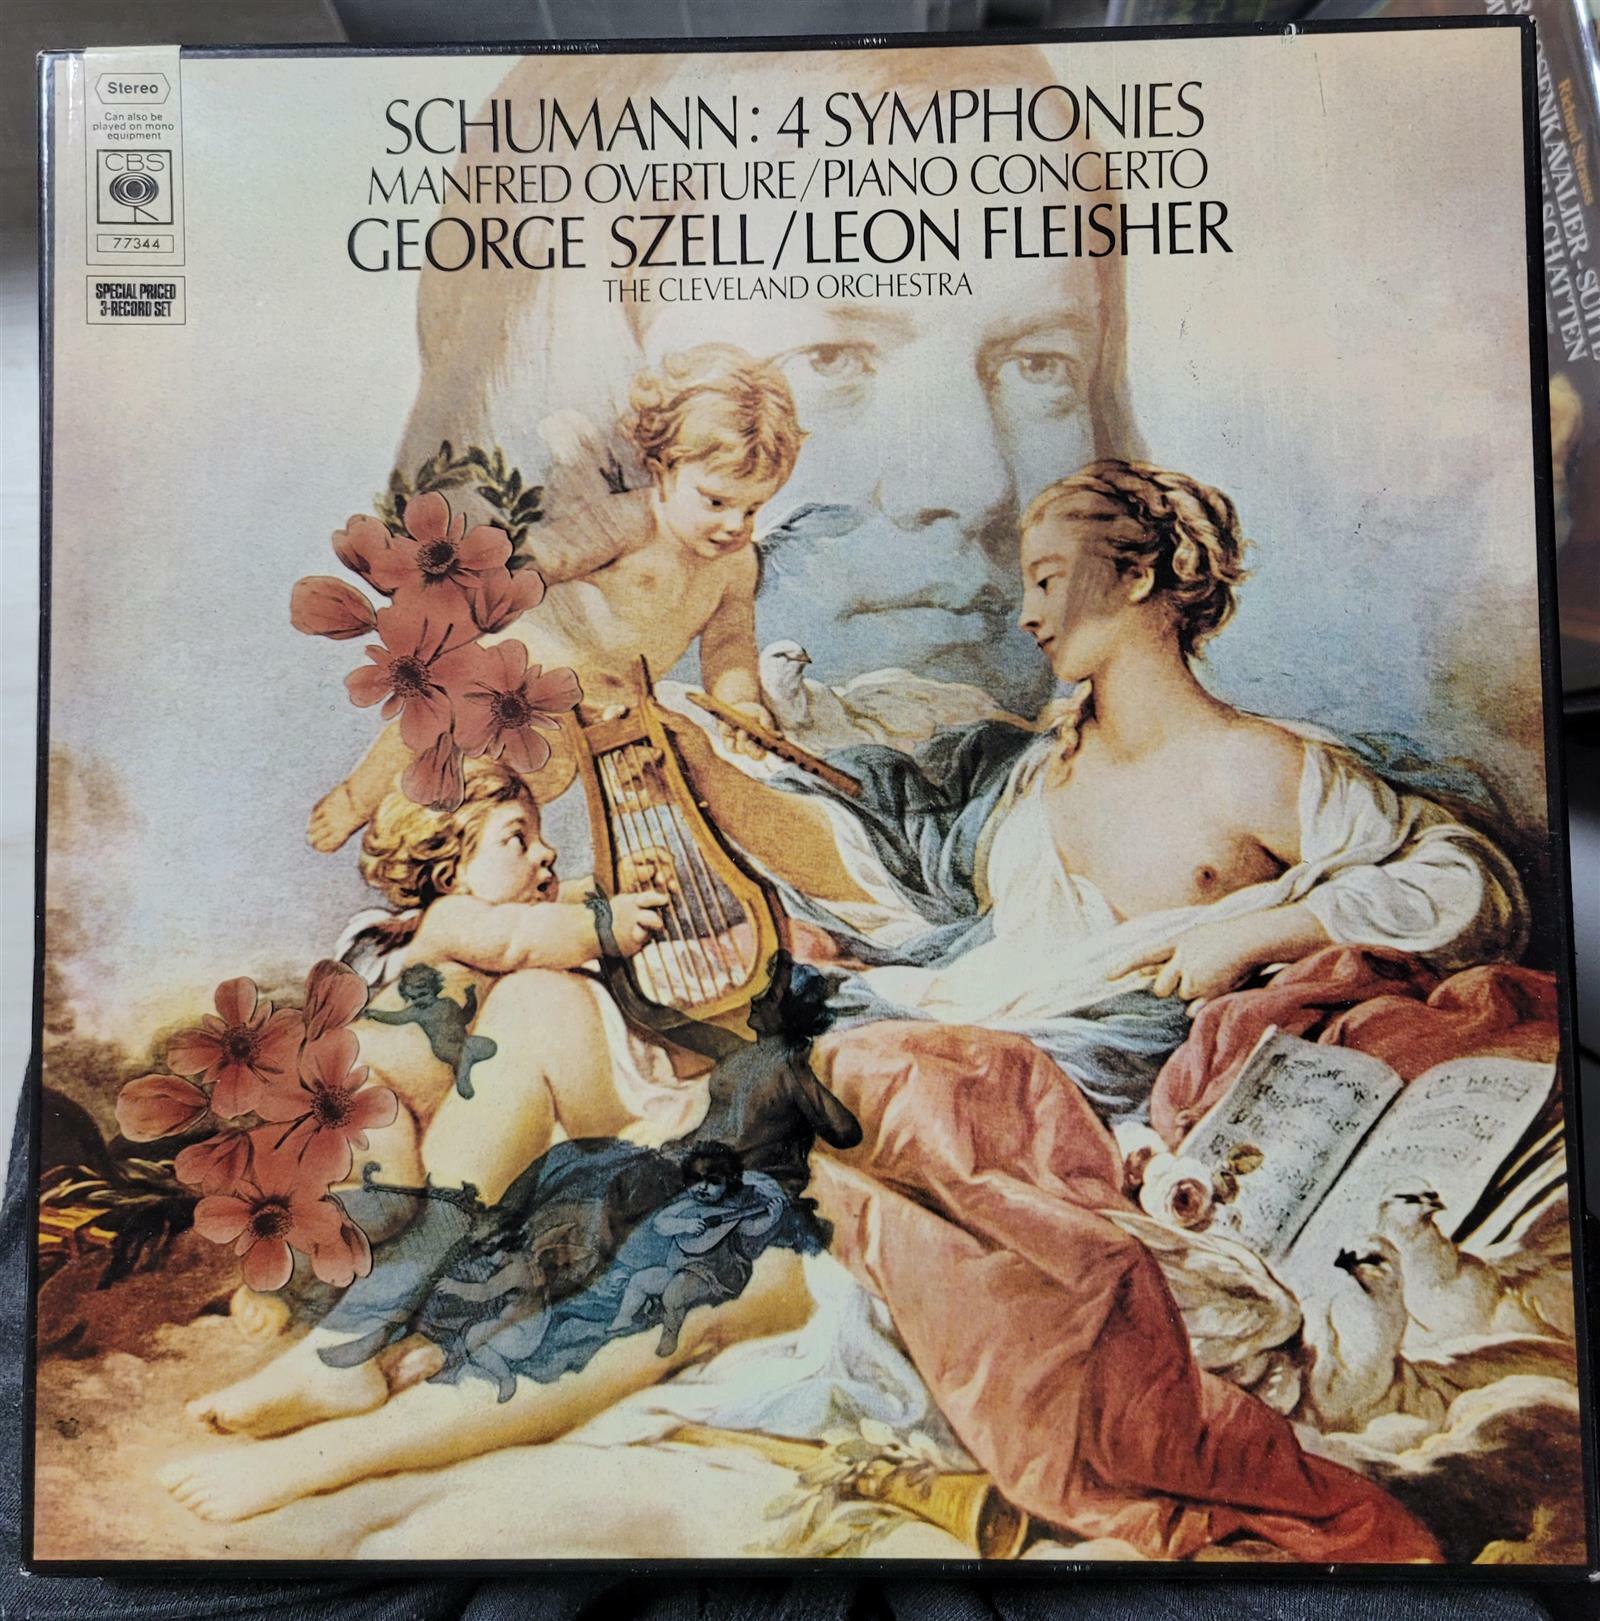 [중고] [수입][LP] George Szell - 슈만 : 교향곡 1-4번, 피아노 협주곡, 만프레드 서곡 (3LP)(영국)